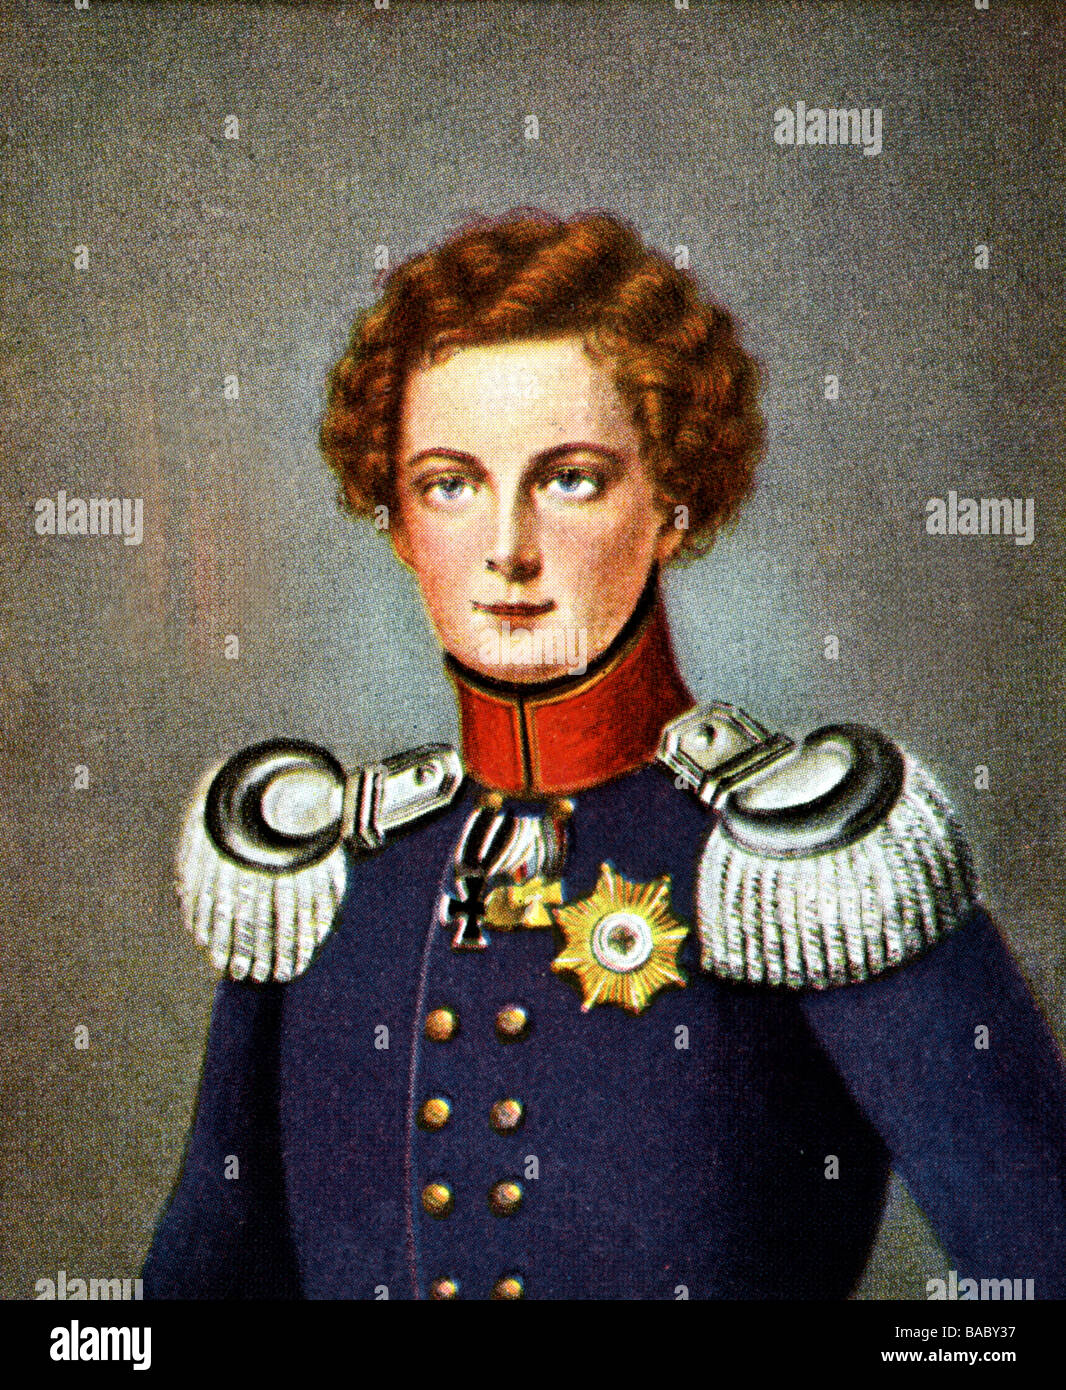 Frederick William IV, 15.10.1795 - 2.1.1861, roi de Prusse 7.6.1840 - 26.10.1858, portrait, en tant que jeune homme, imprimé après miniature, 19ème siècle, carte à cigarettes, Allemagne, 1933, , Banque D'Images